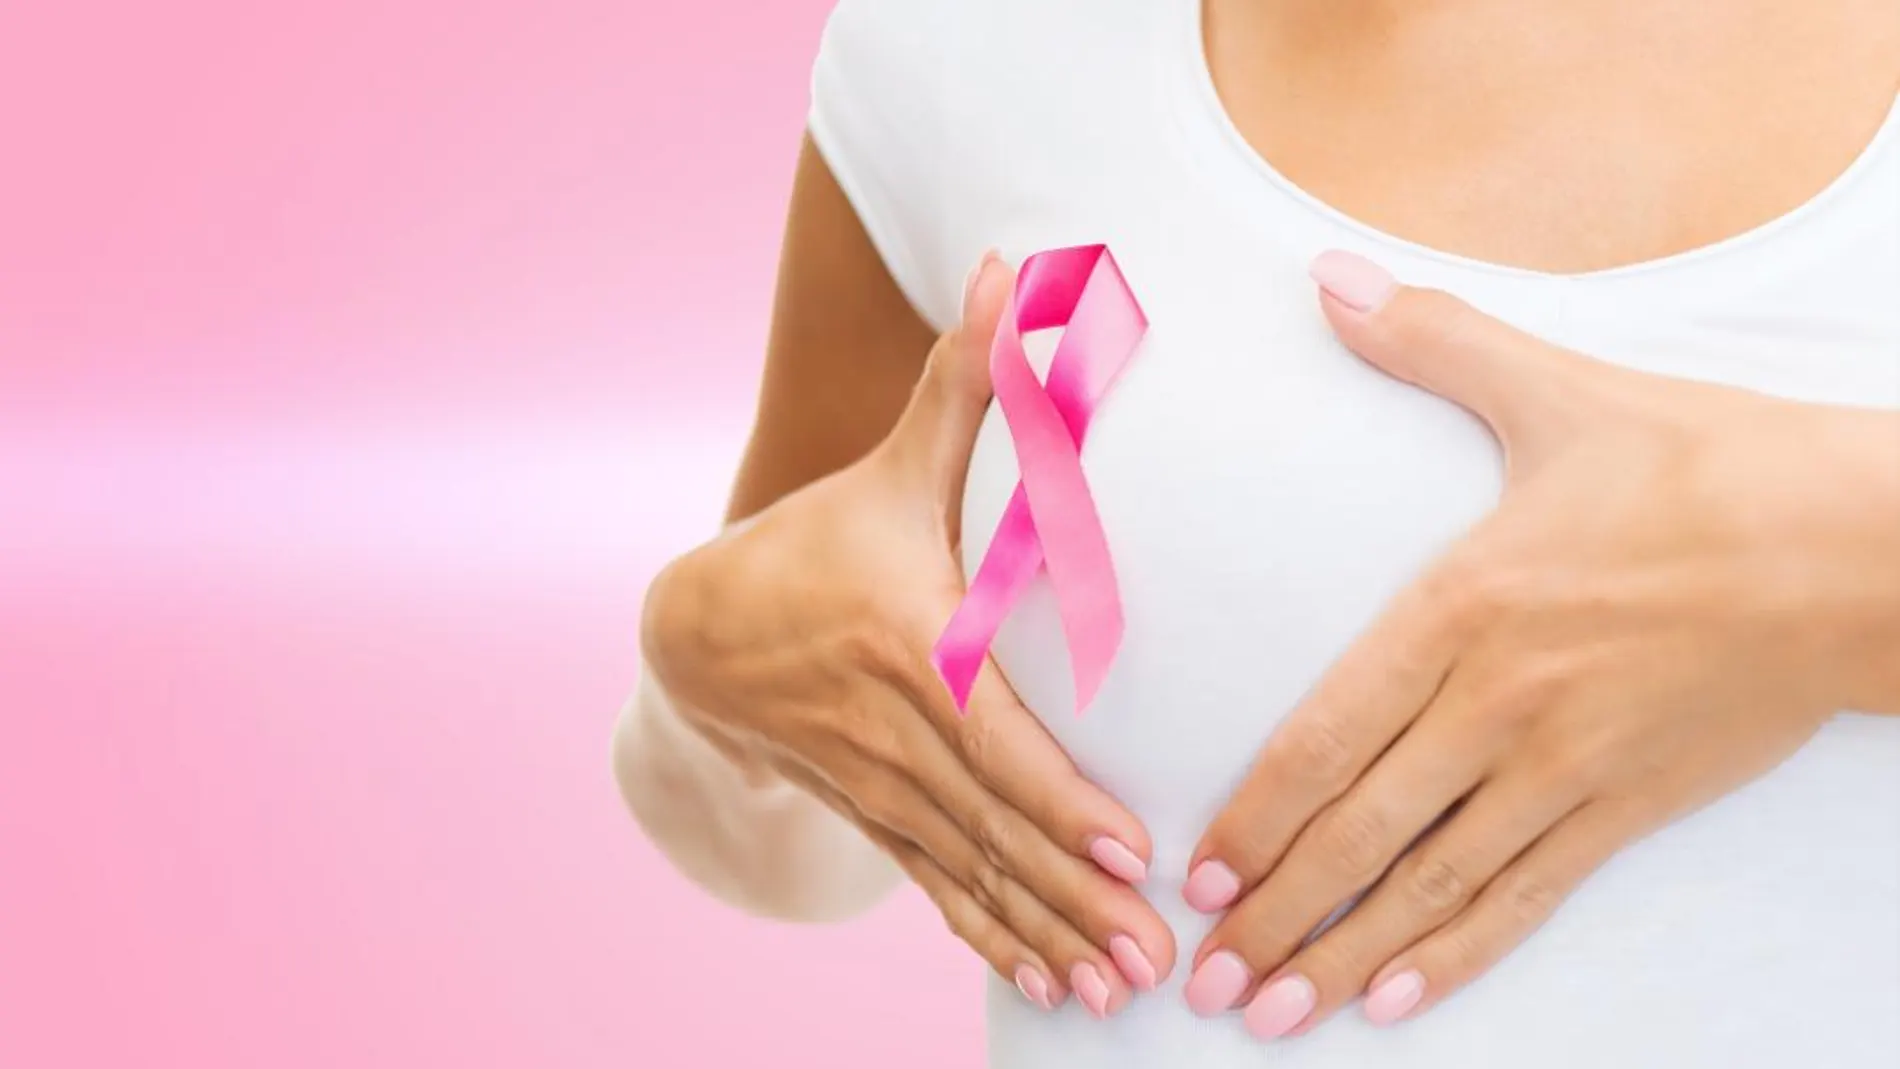 El cáncer de mama y la importancia de la prevención desde el inicio de las relaciones sexuales